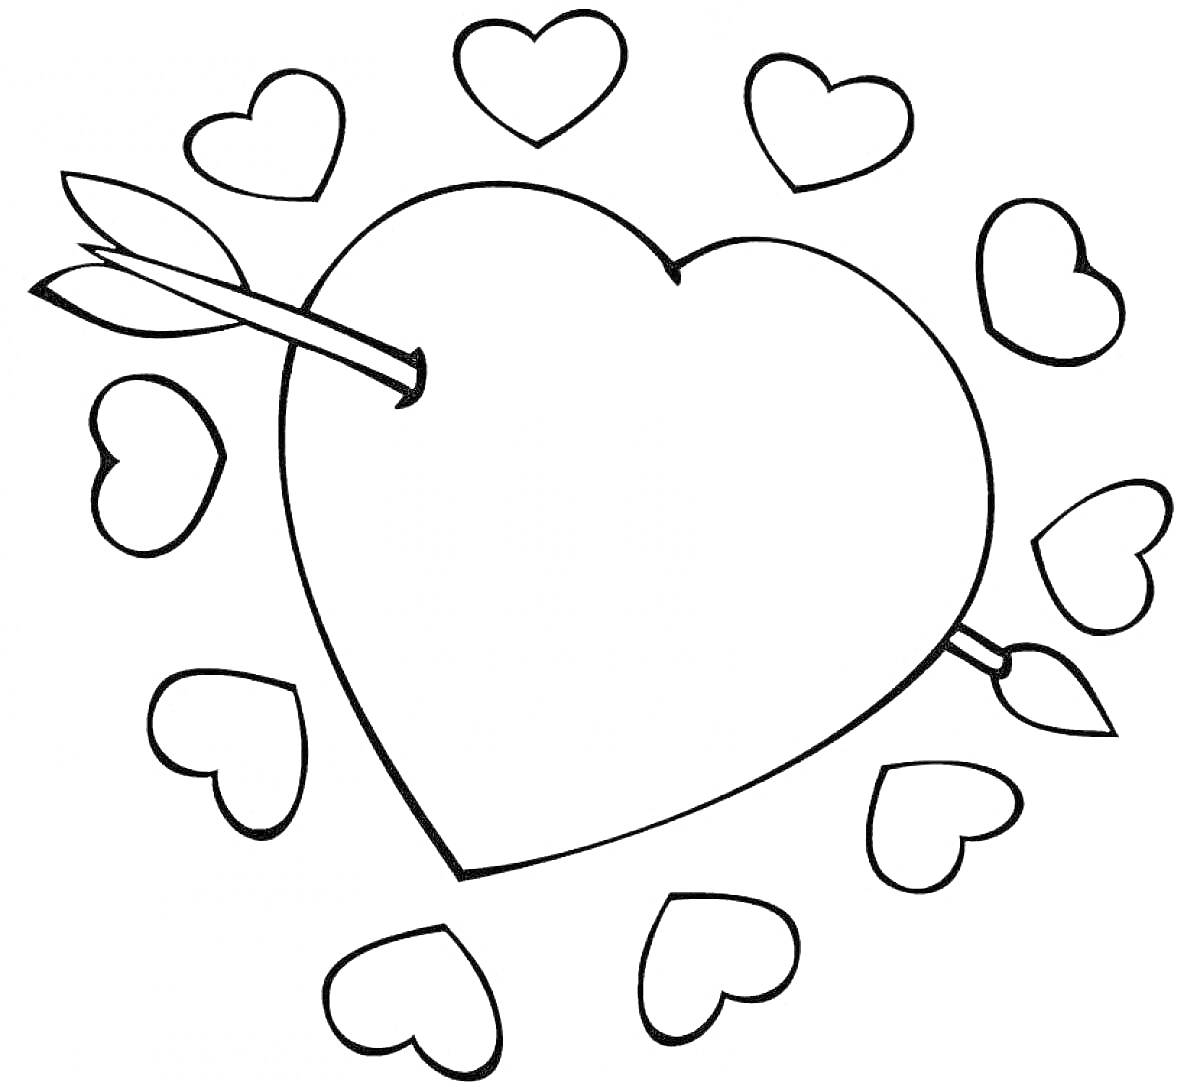 Раскраска Сердце с двумя стрелами и маленькими сердечками вокруг